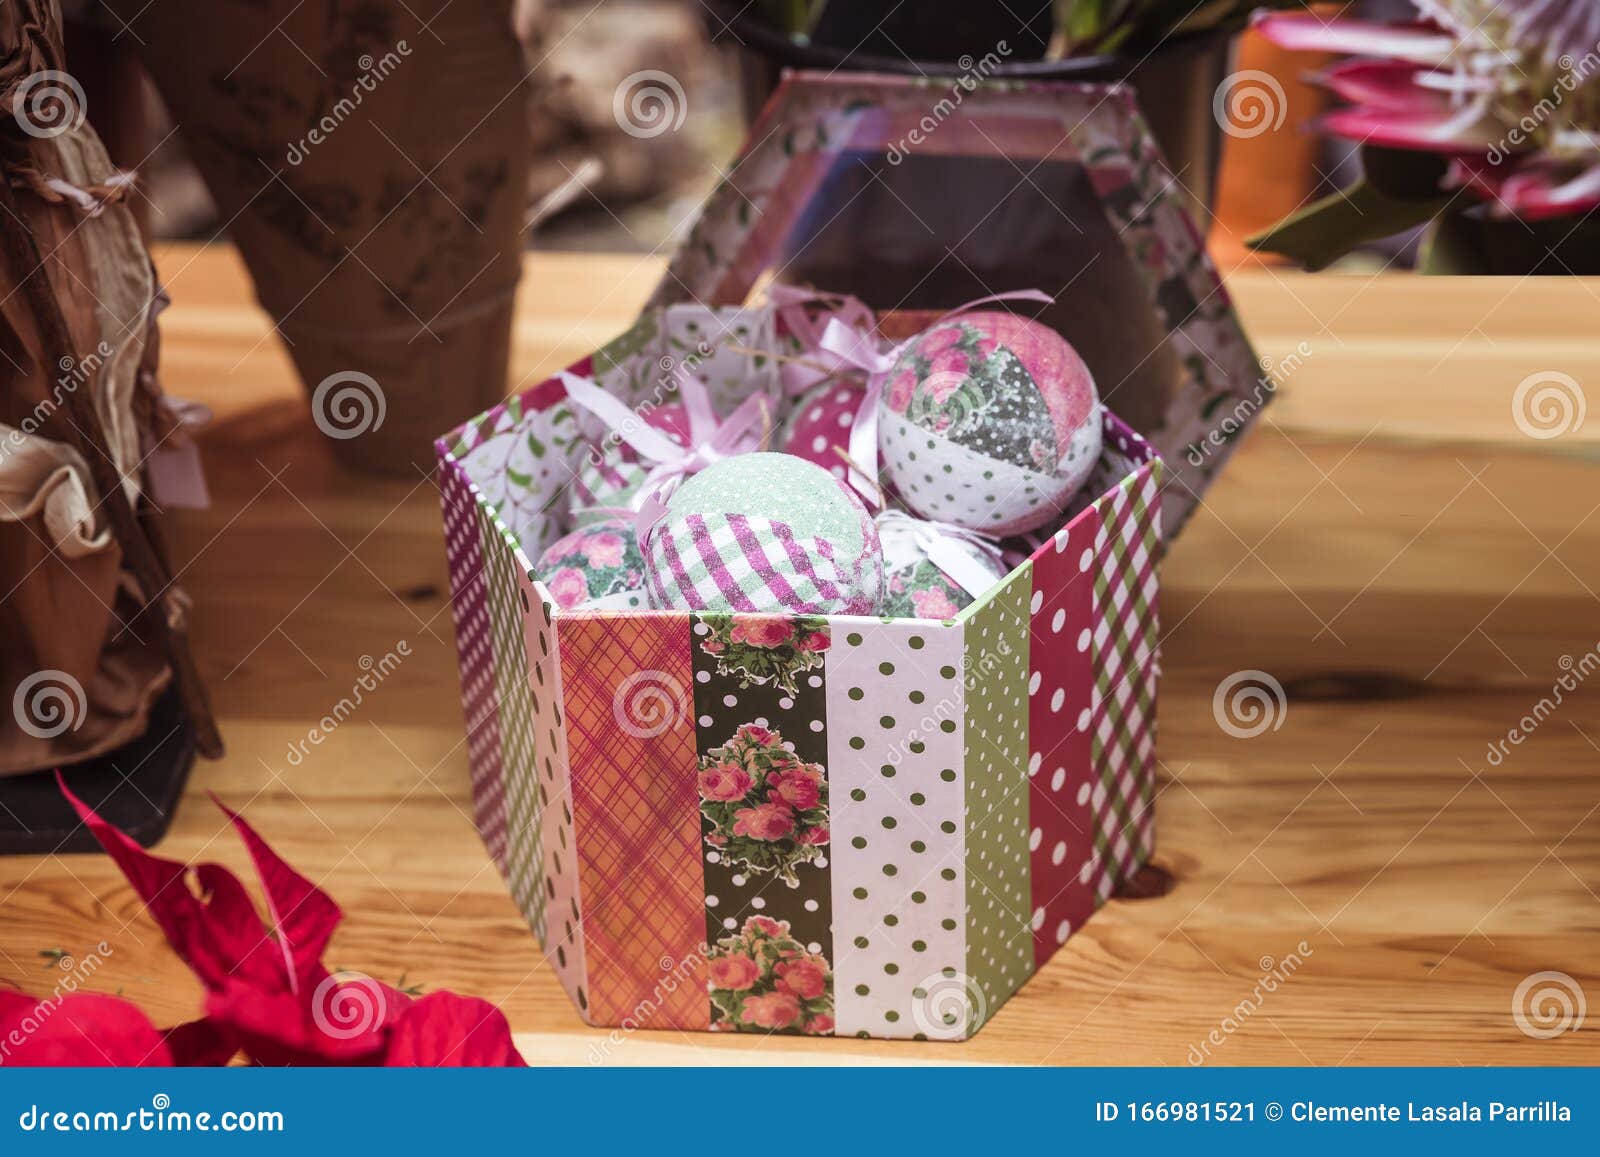 Caixa De Presente Decorada De Armação Cheia De Decorações Originais De Natal  Imagem de Stock - Imagem de alegre, sazonal: 166981521